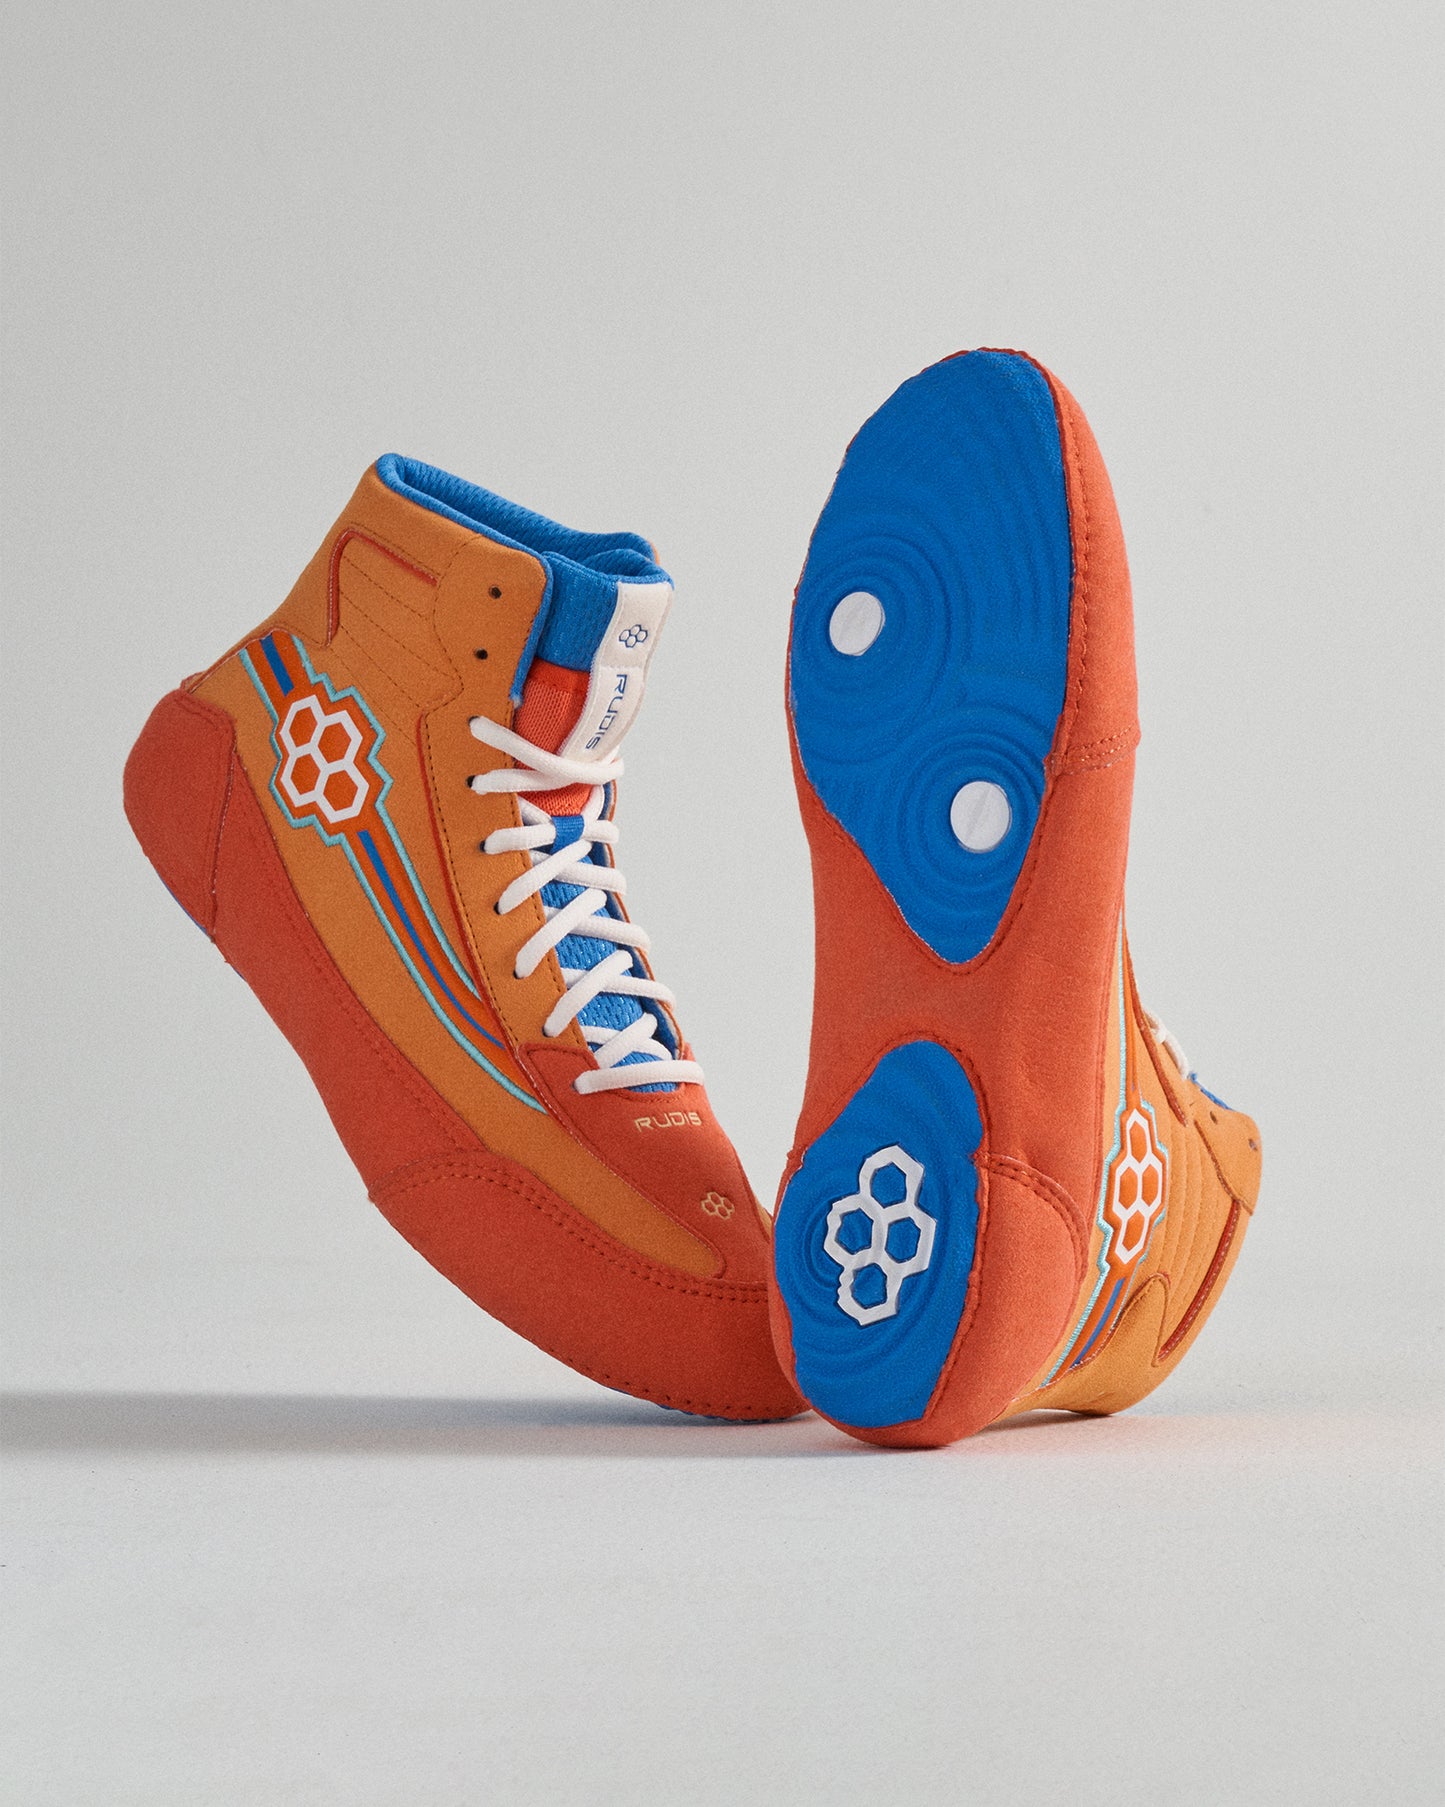 RUDIS Ninety-5 Youth Wrestling Shoes - Orange